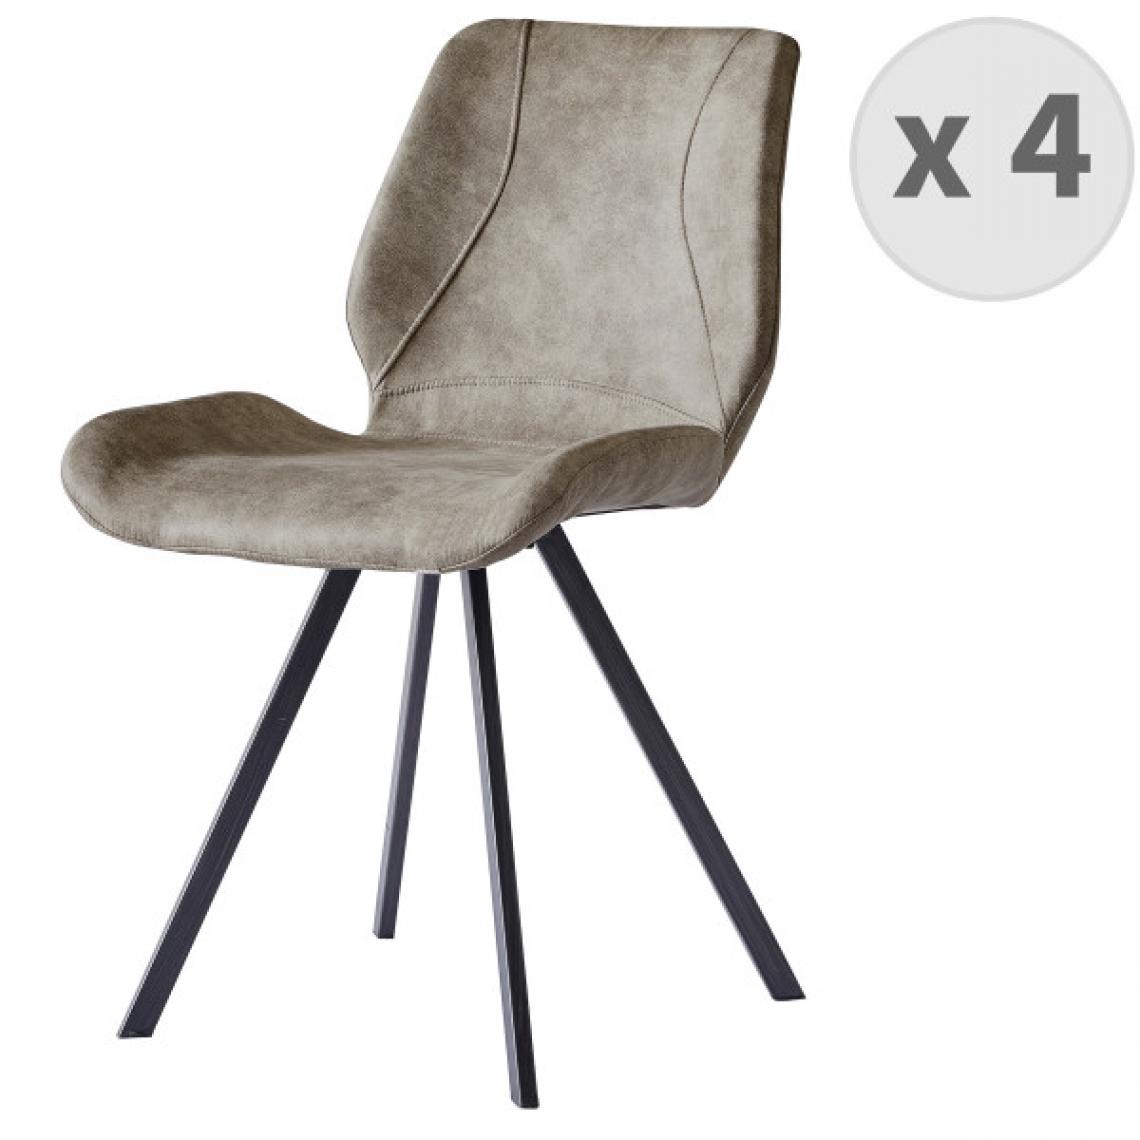 Moloo - HORIZON-Chaise indus marron vintage brun clair pieds noir brossé (x4) - Chaises